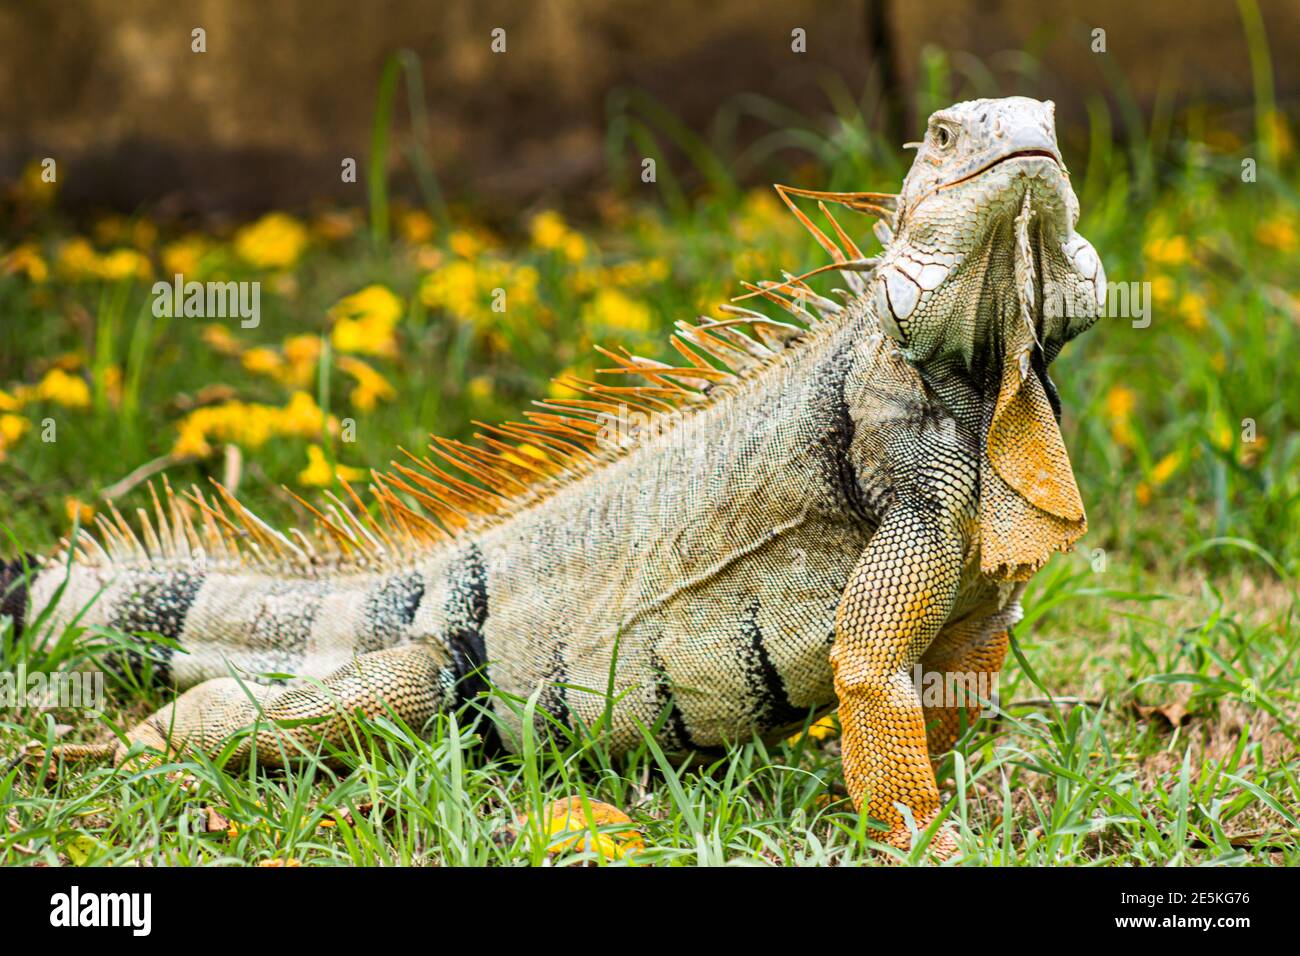 The iguana Stock Photo